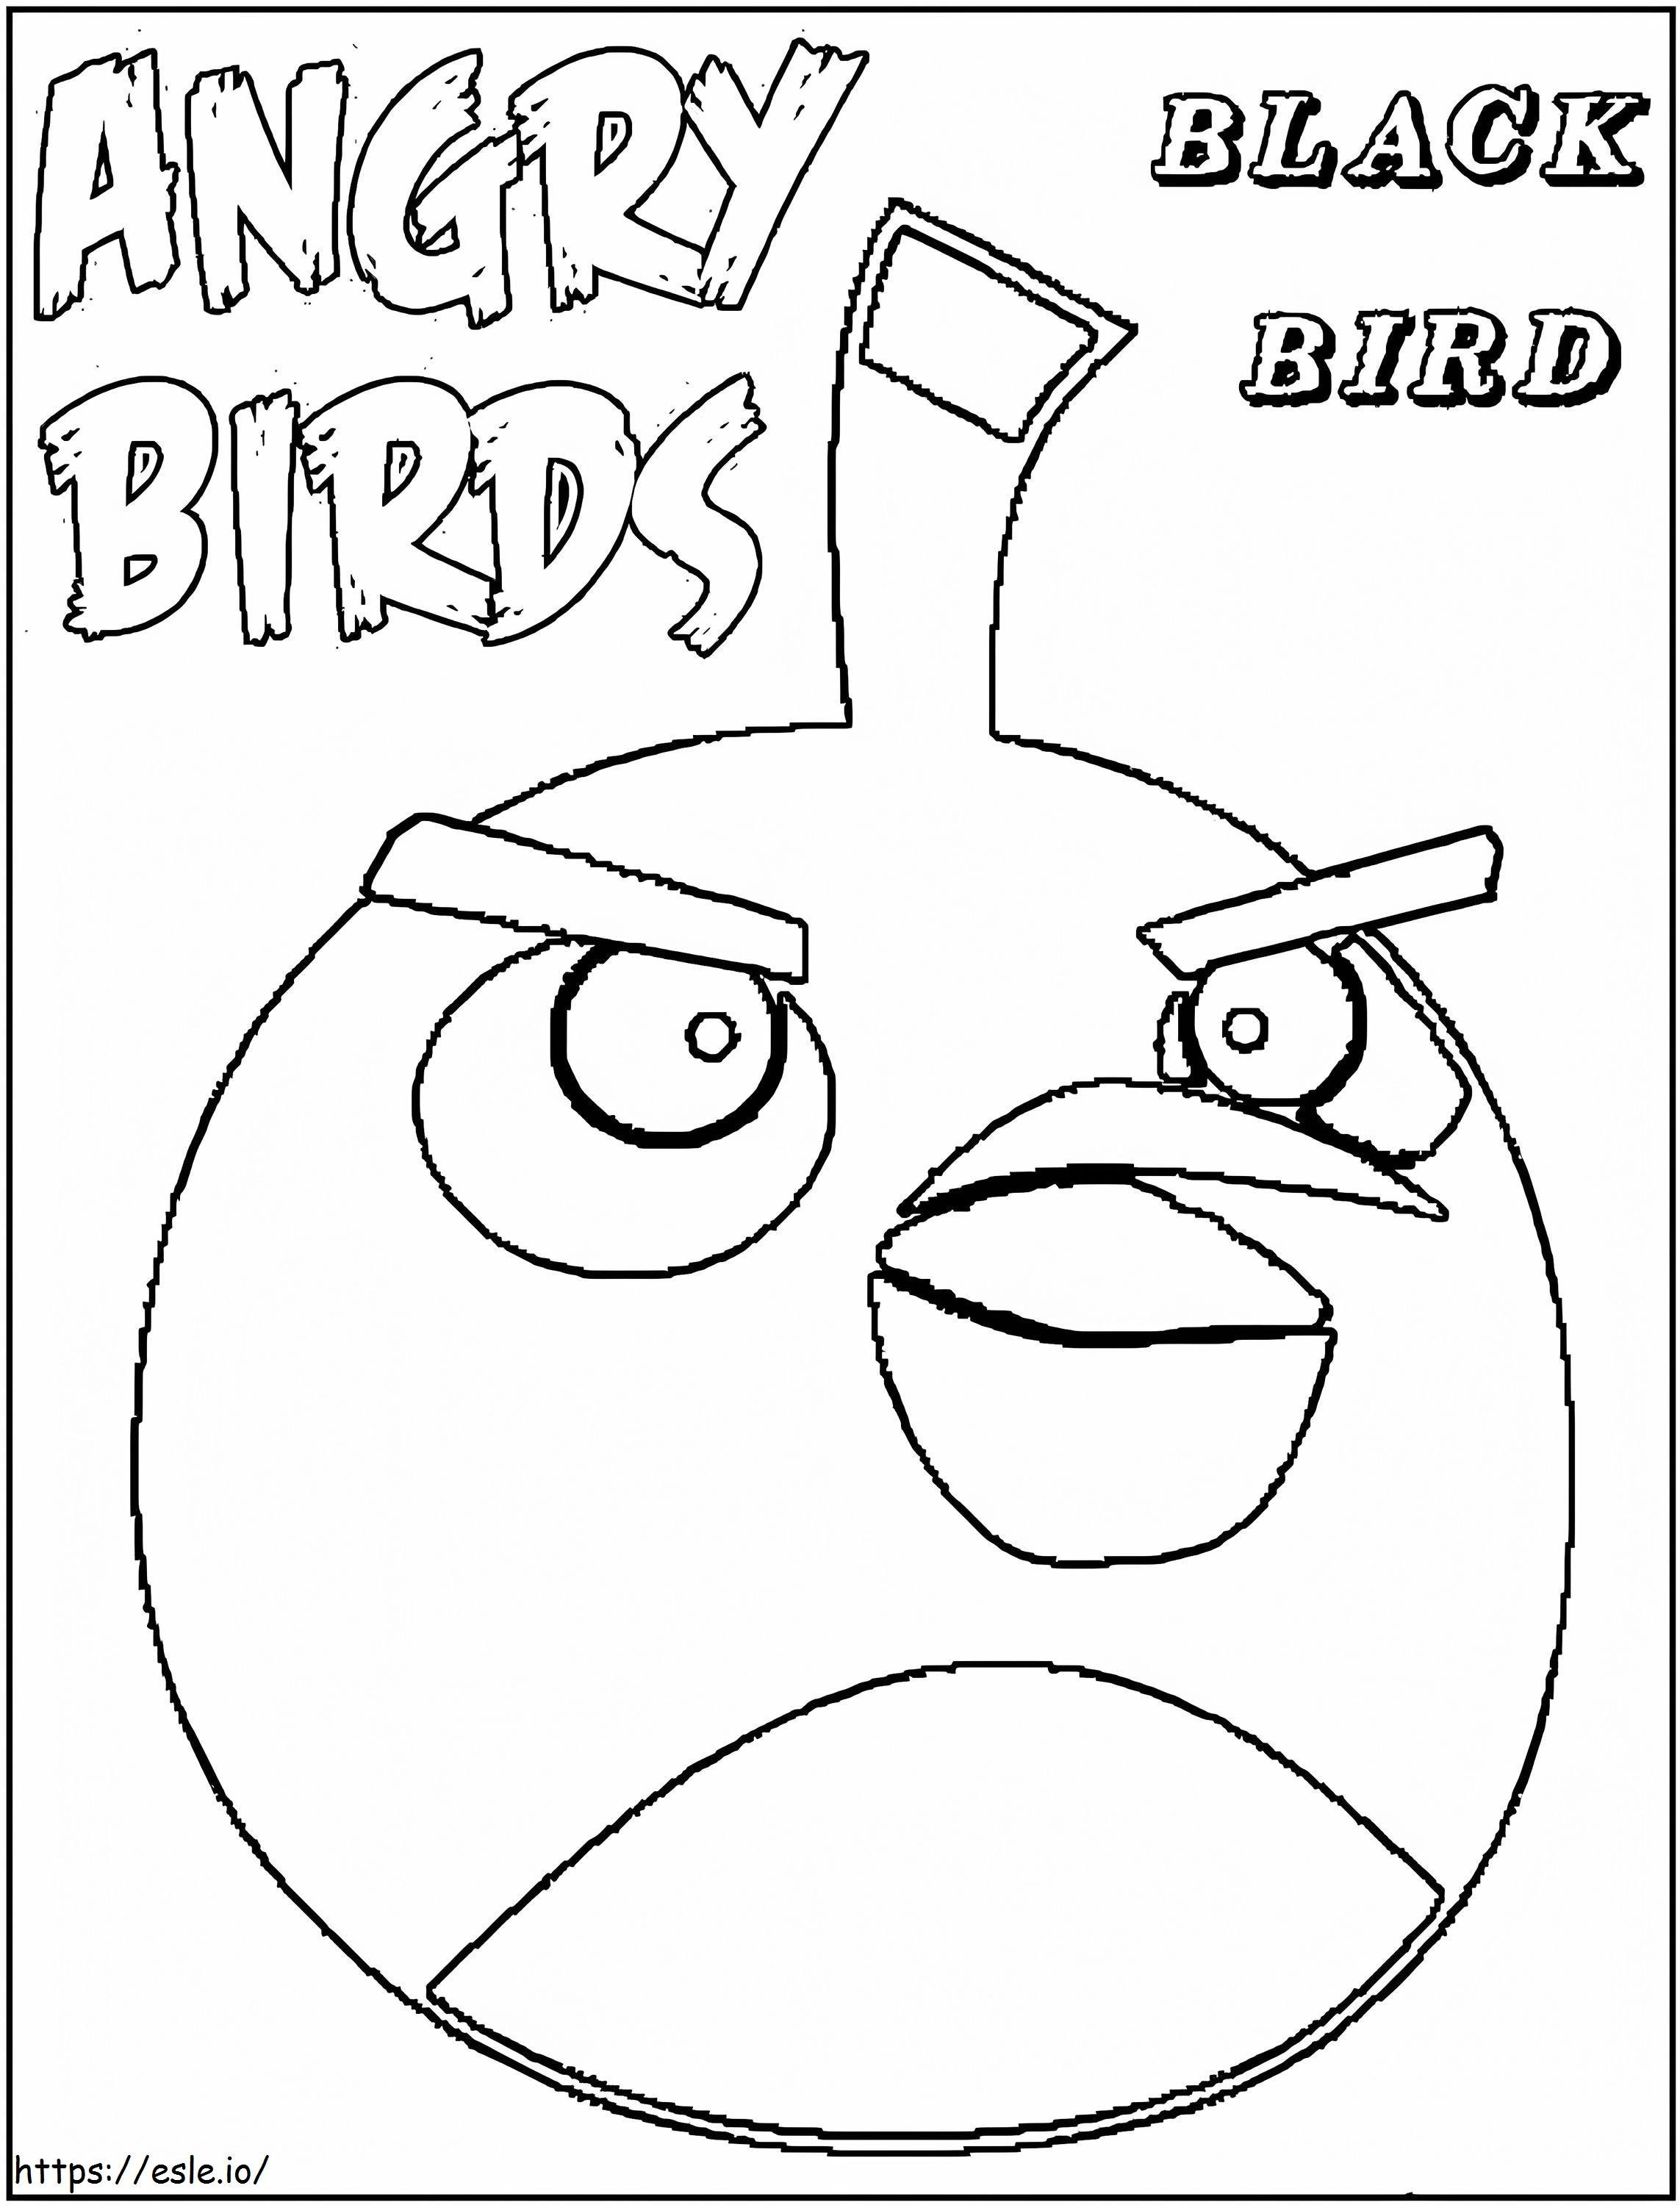 Coloriage Dessin d'oiseau noir d'Angry Birds à imprimer dessin